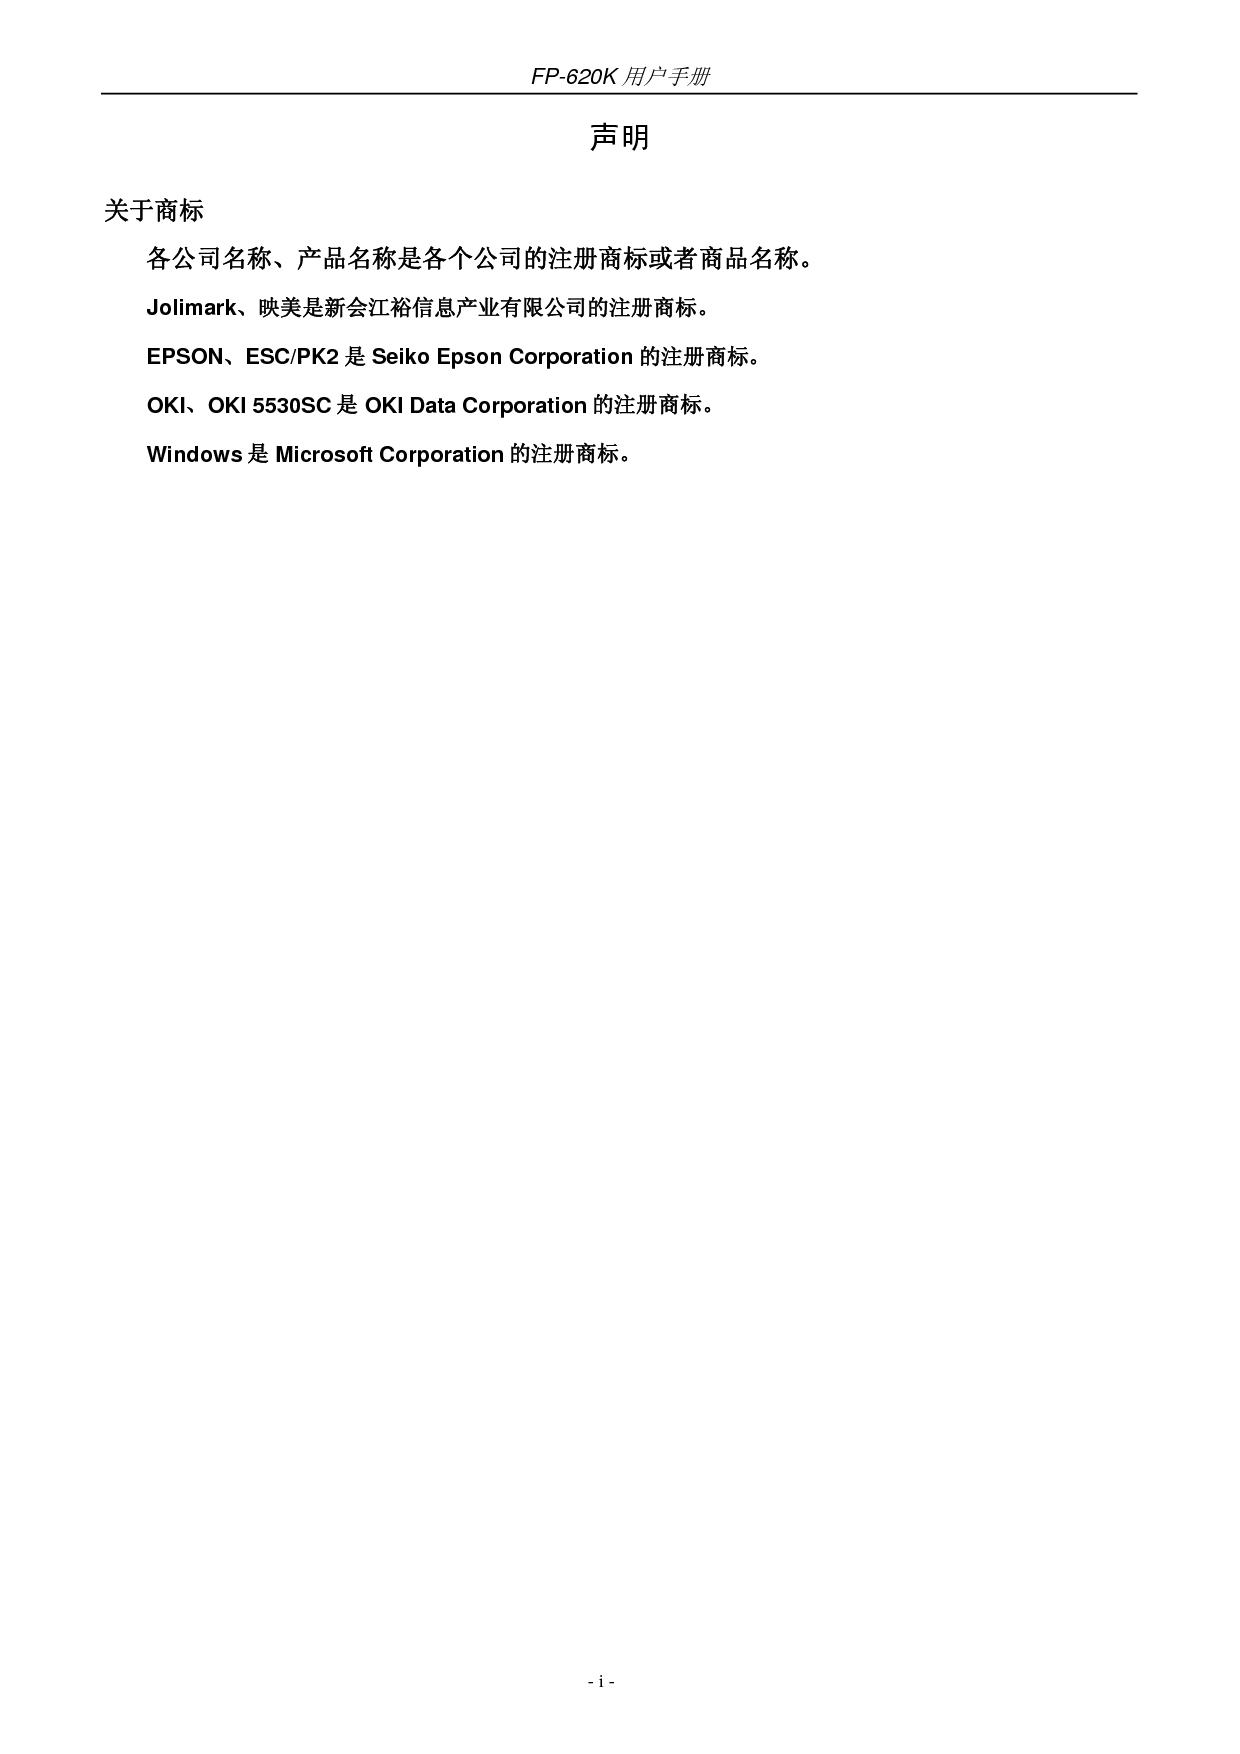 映美 Jolimark FP-620K 用户手册 第1页